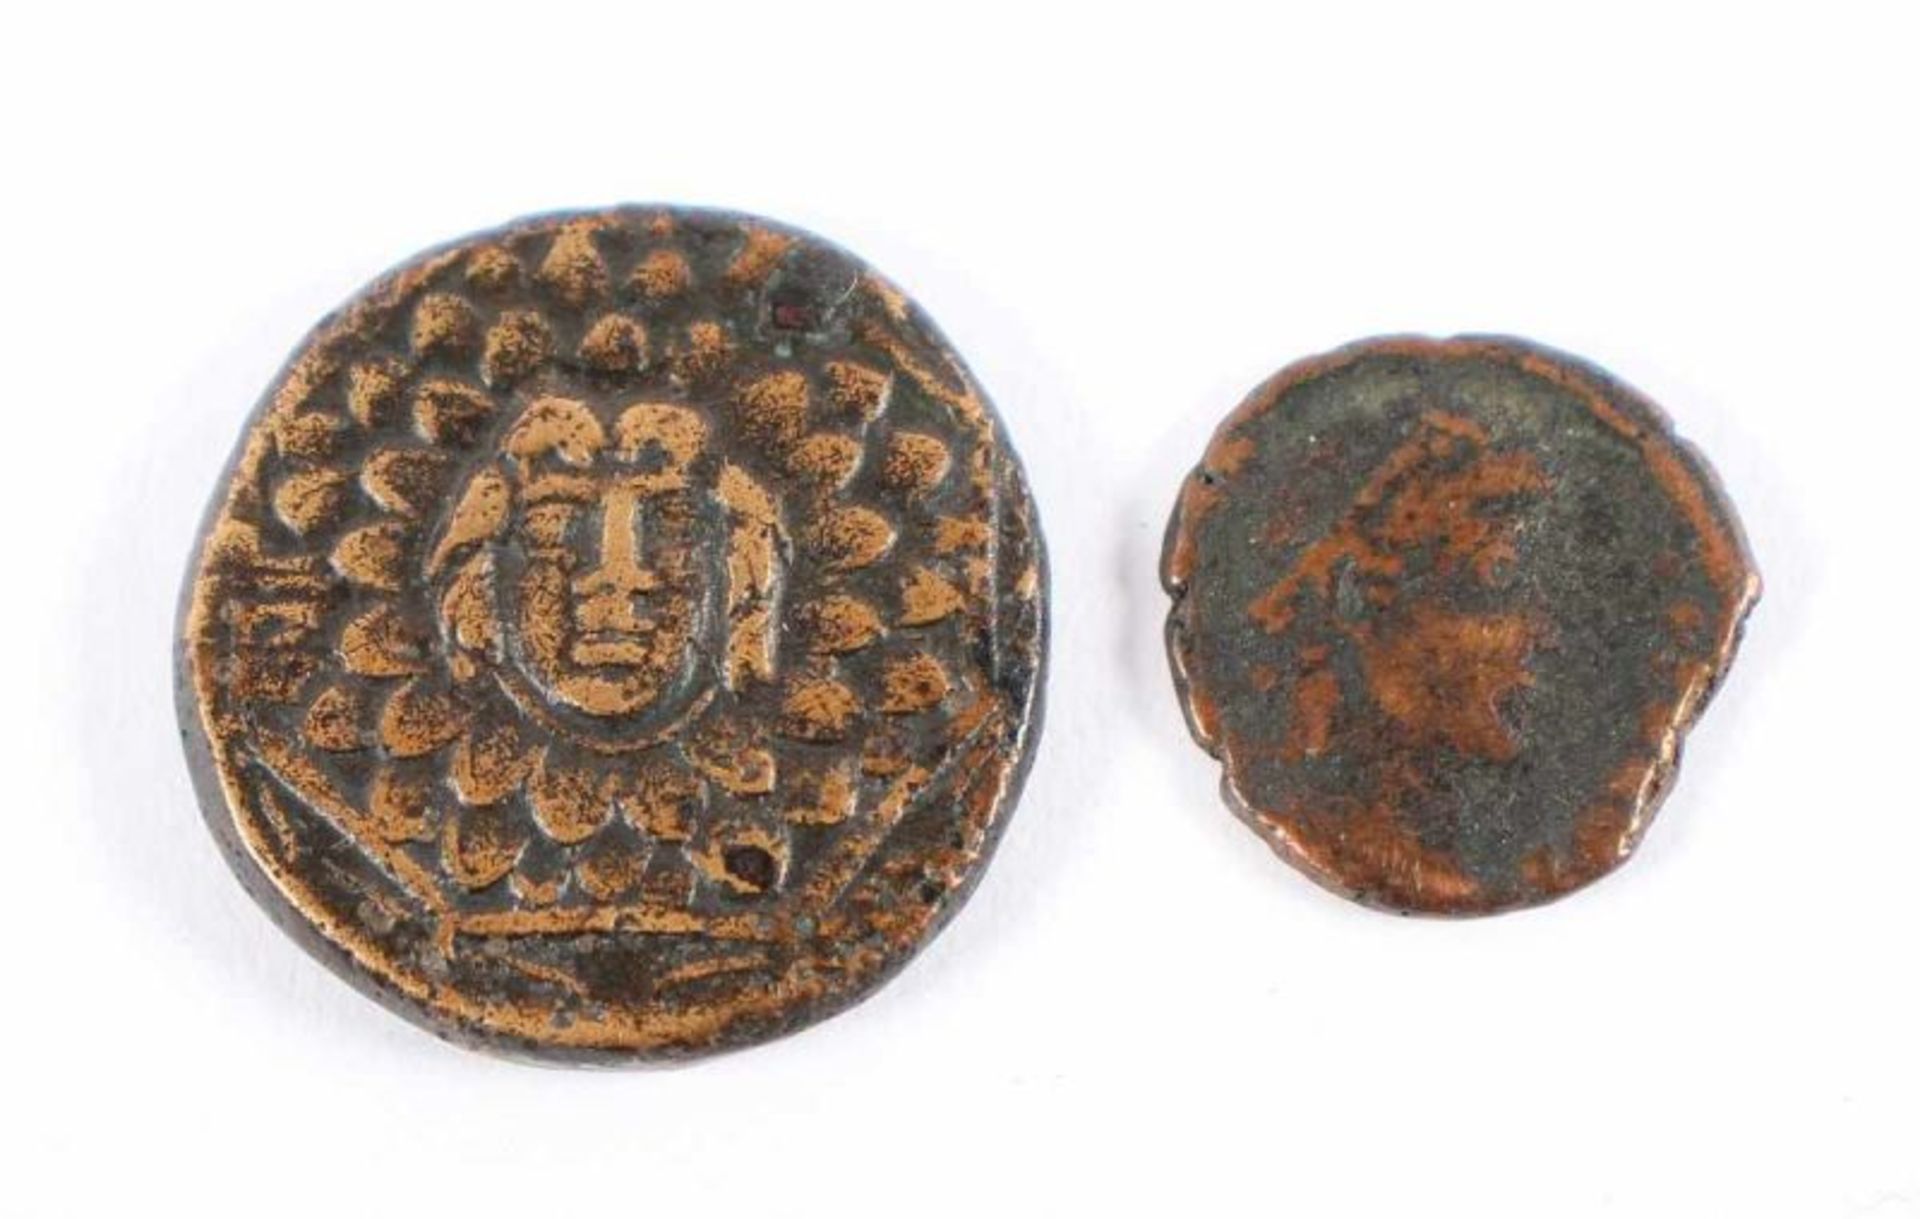 ZWEI ANTIKE MÜNZEN, Bronze/Kupfer, Dm 2 und 1,5, VORDERASIEN, ca. 2.-3. Jh.v.Chr. 22.00 % buyer's